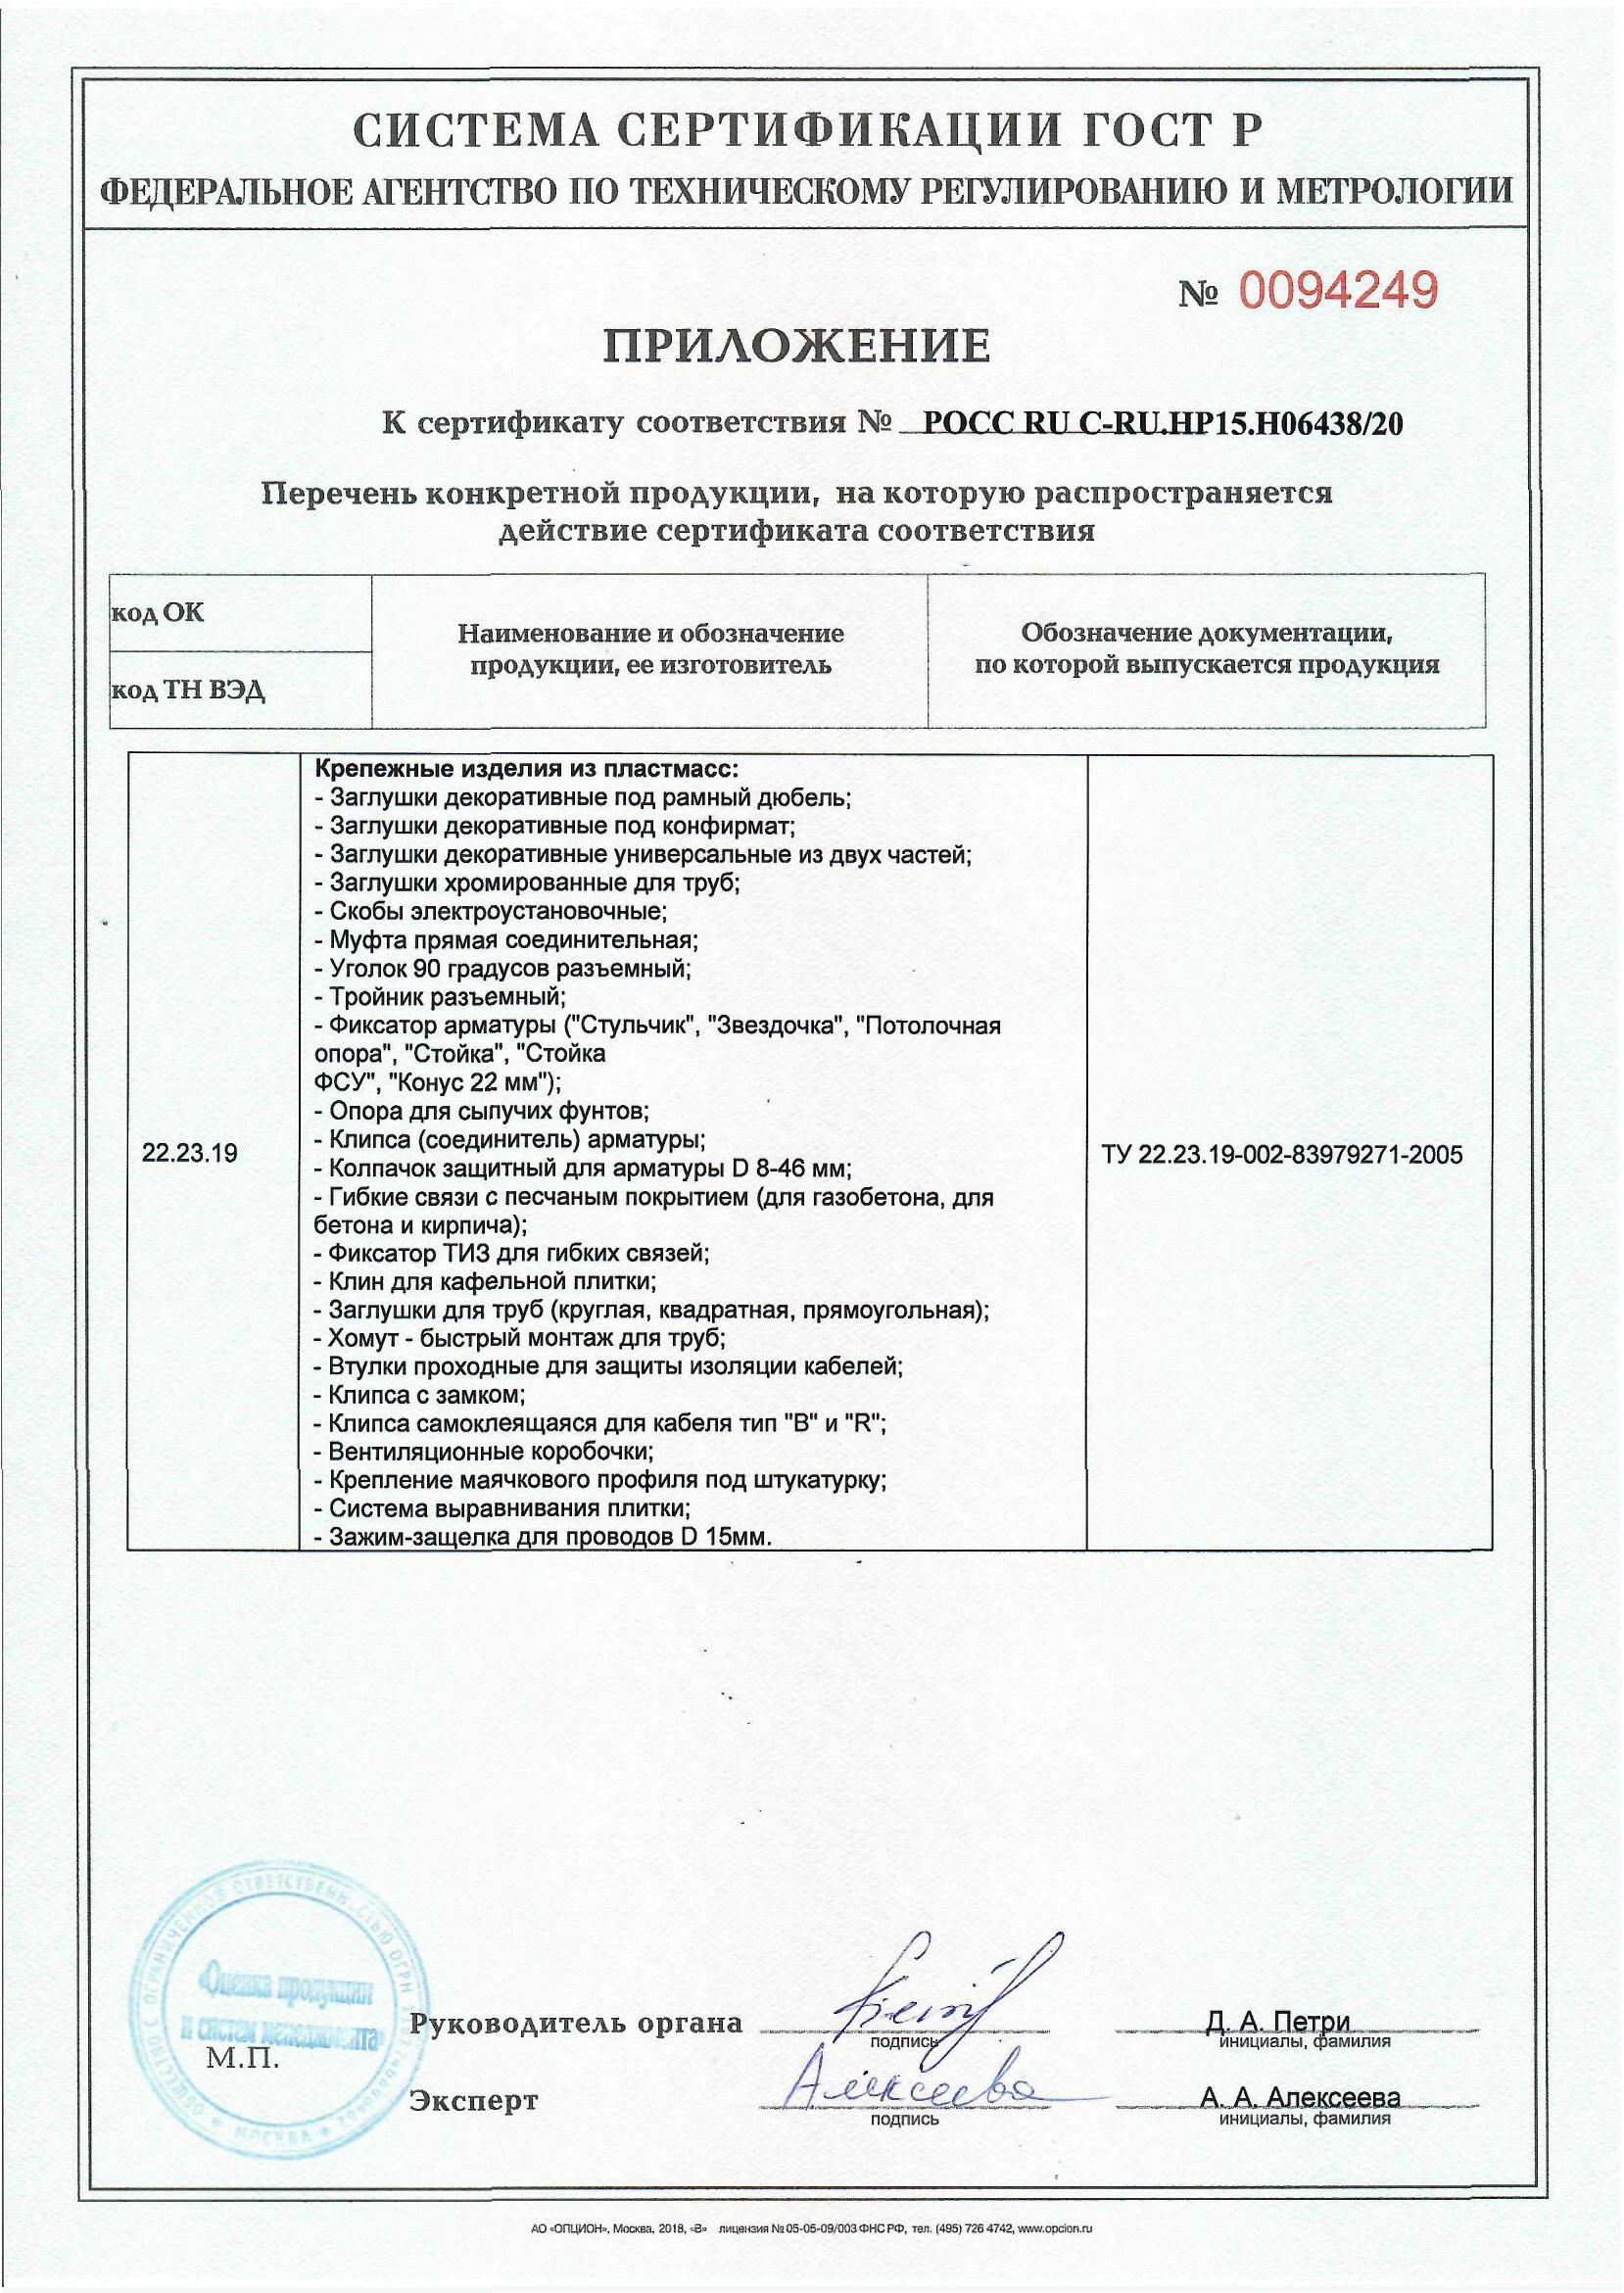 Сертификат на крепежные изделия из пластмасс